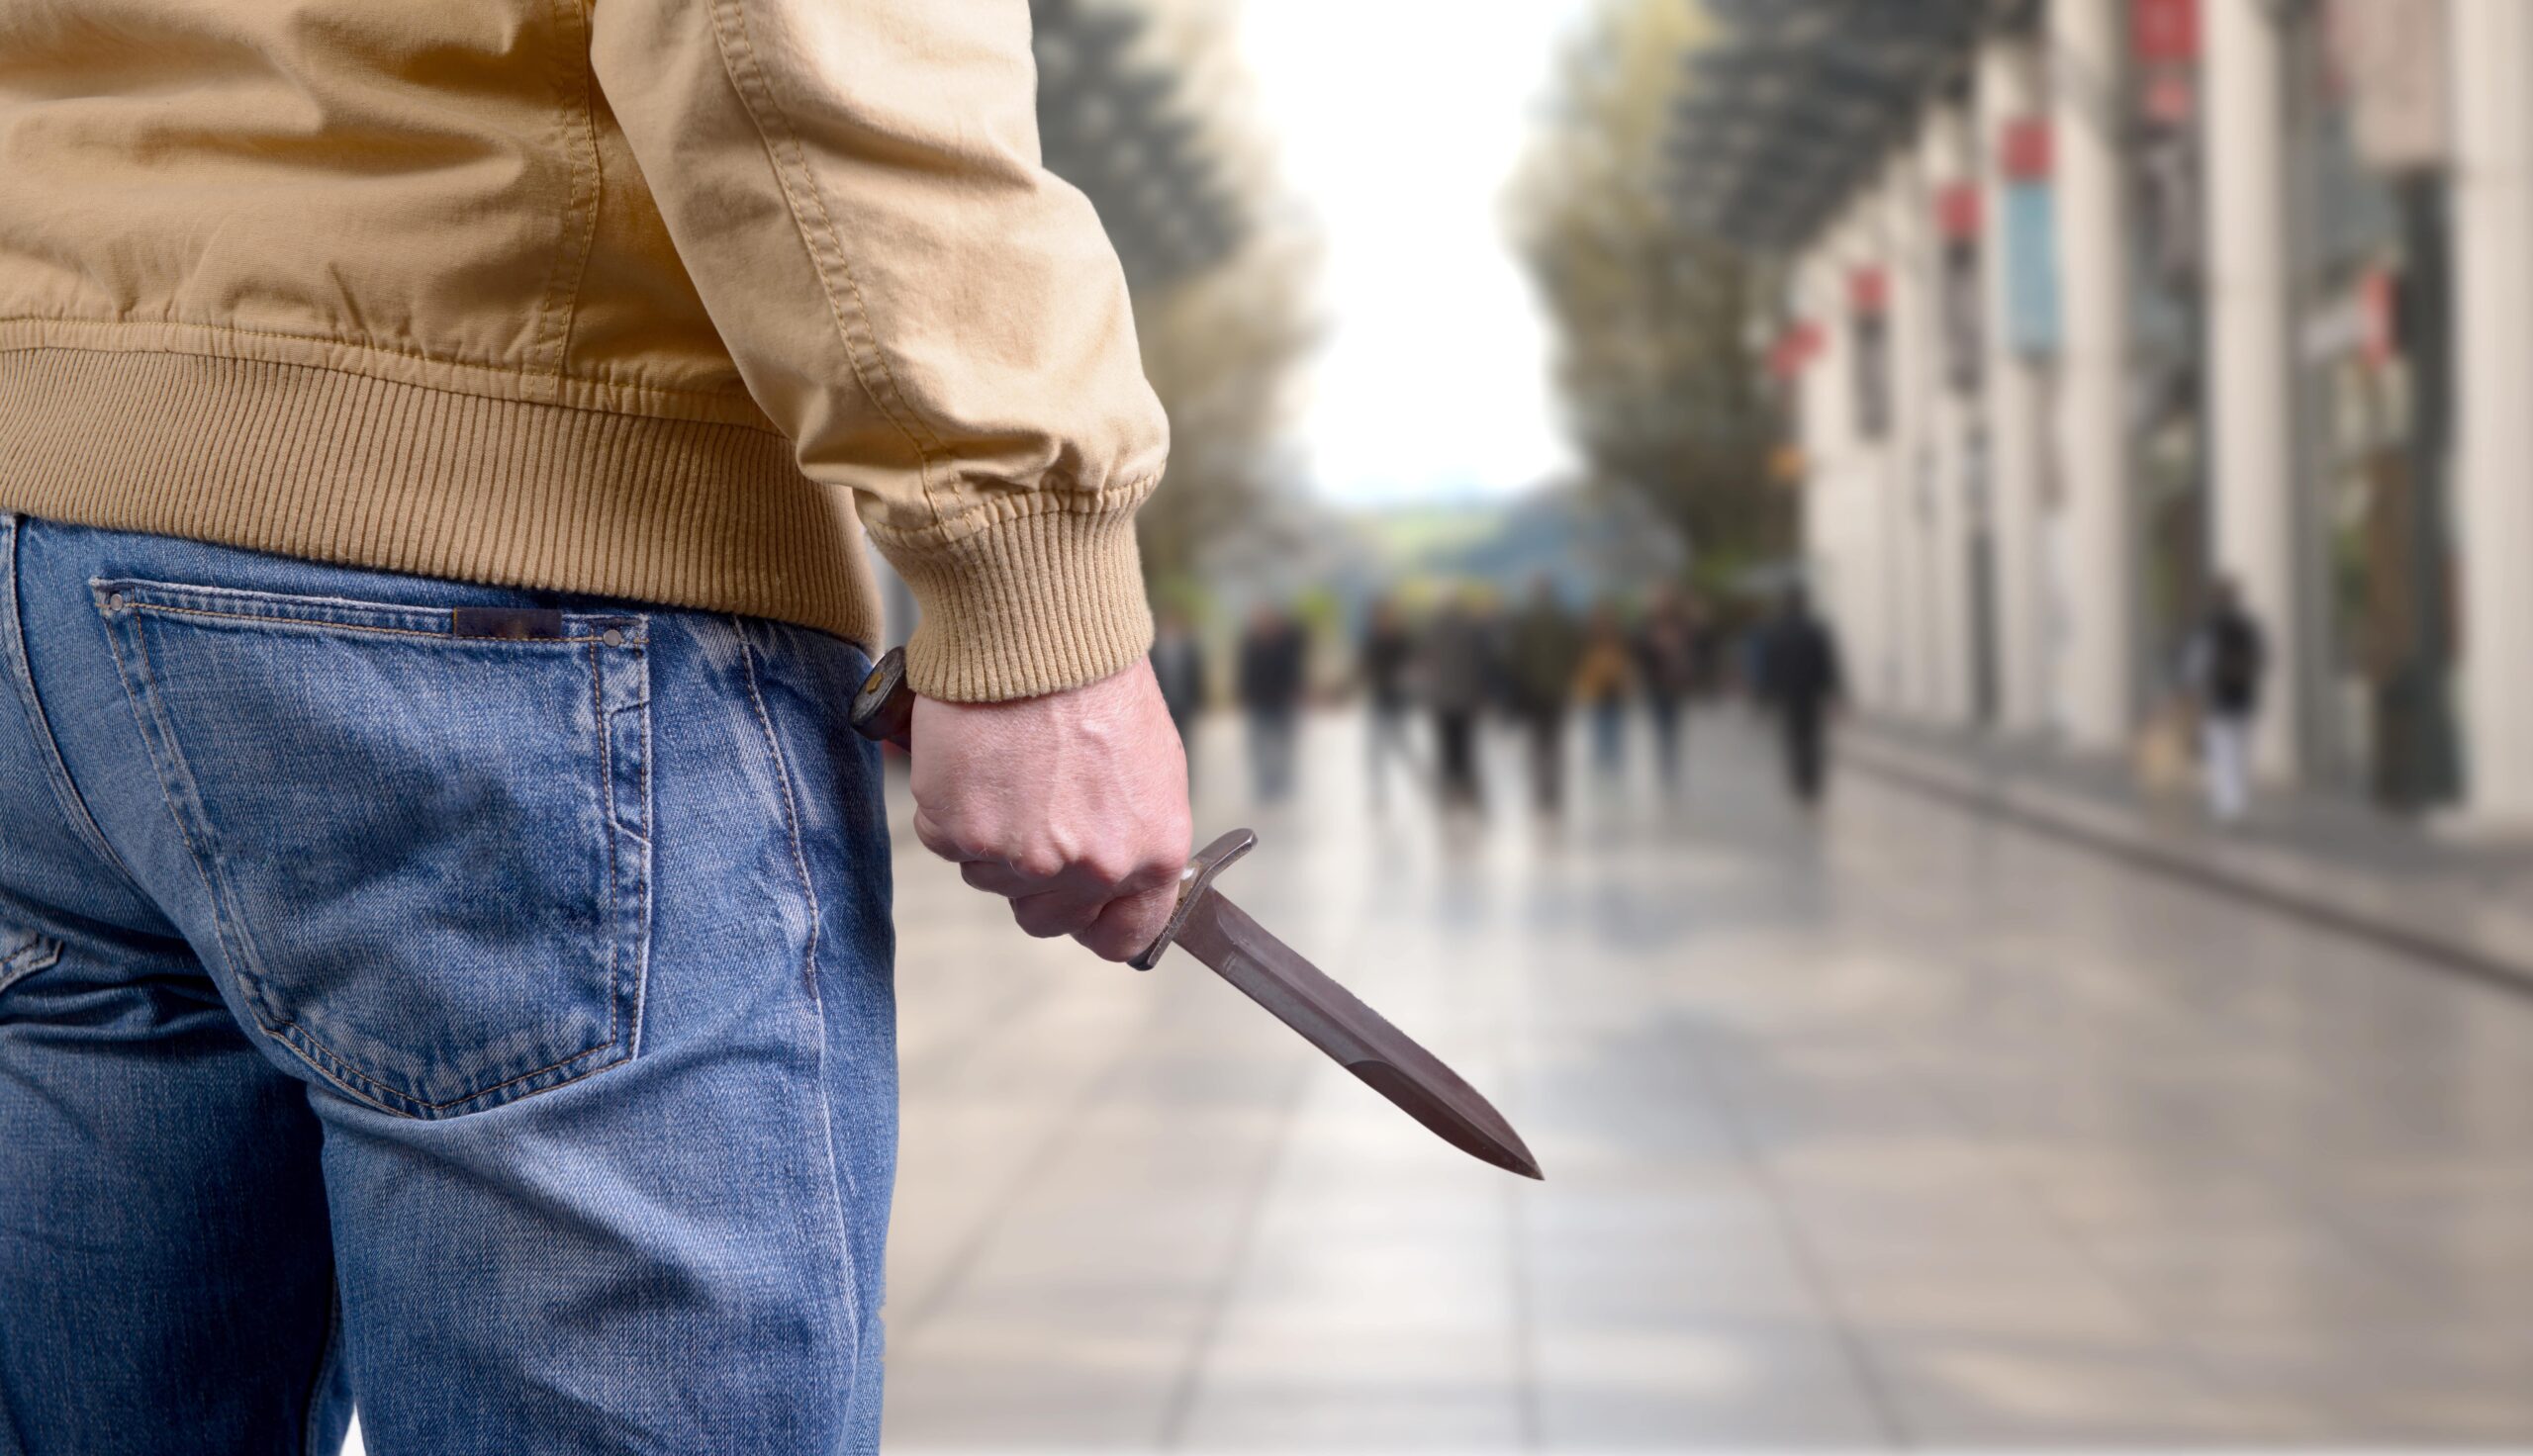 knife in public